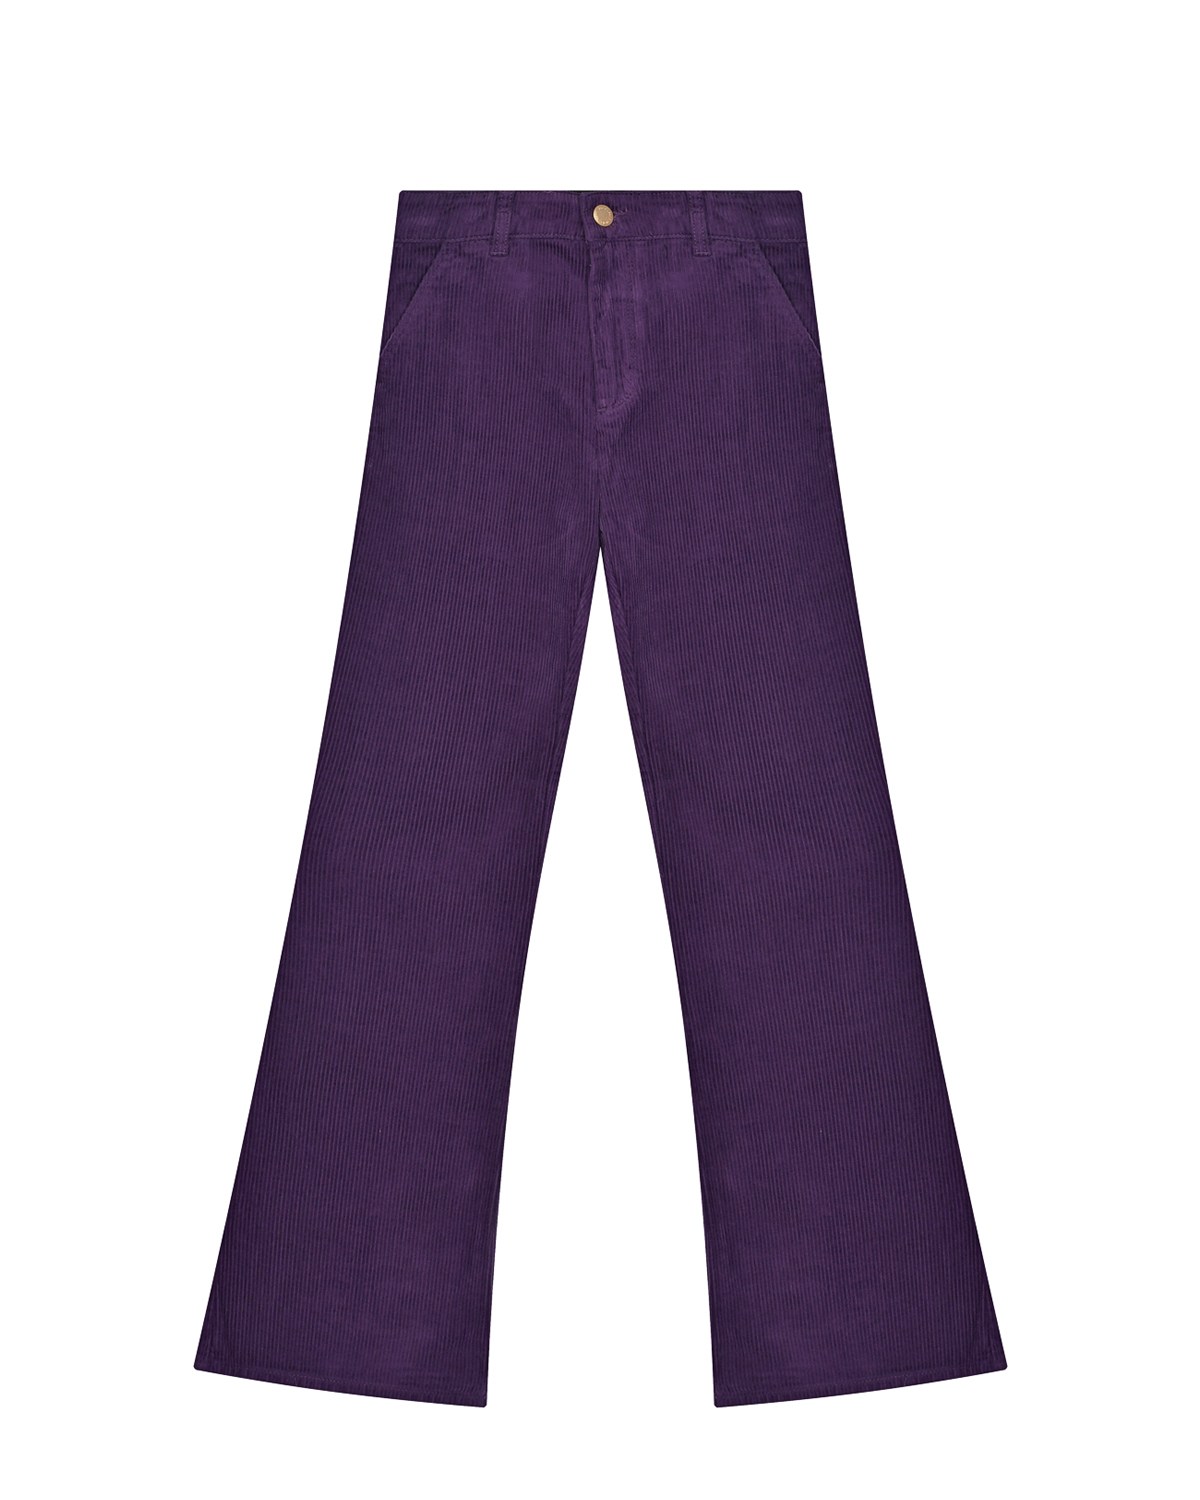 Вельветовые брюки Aida Night Purple Molo детские, размер 152, цвет фиолетовый